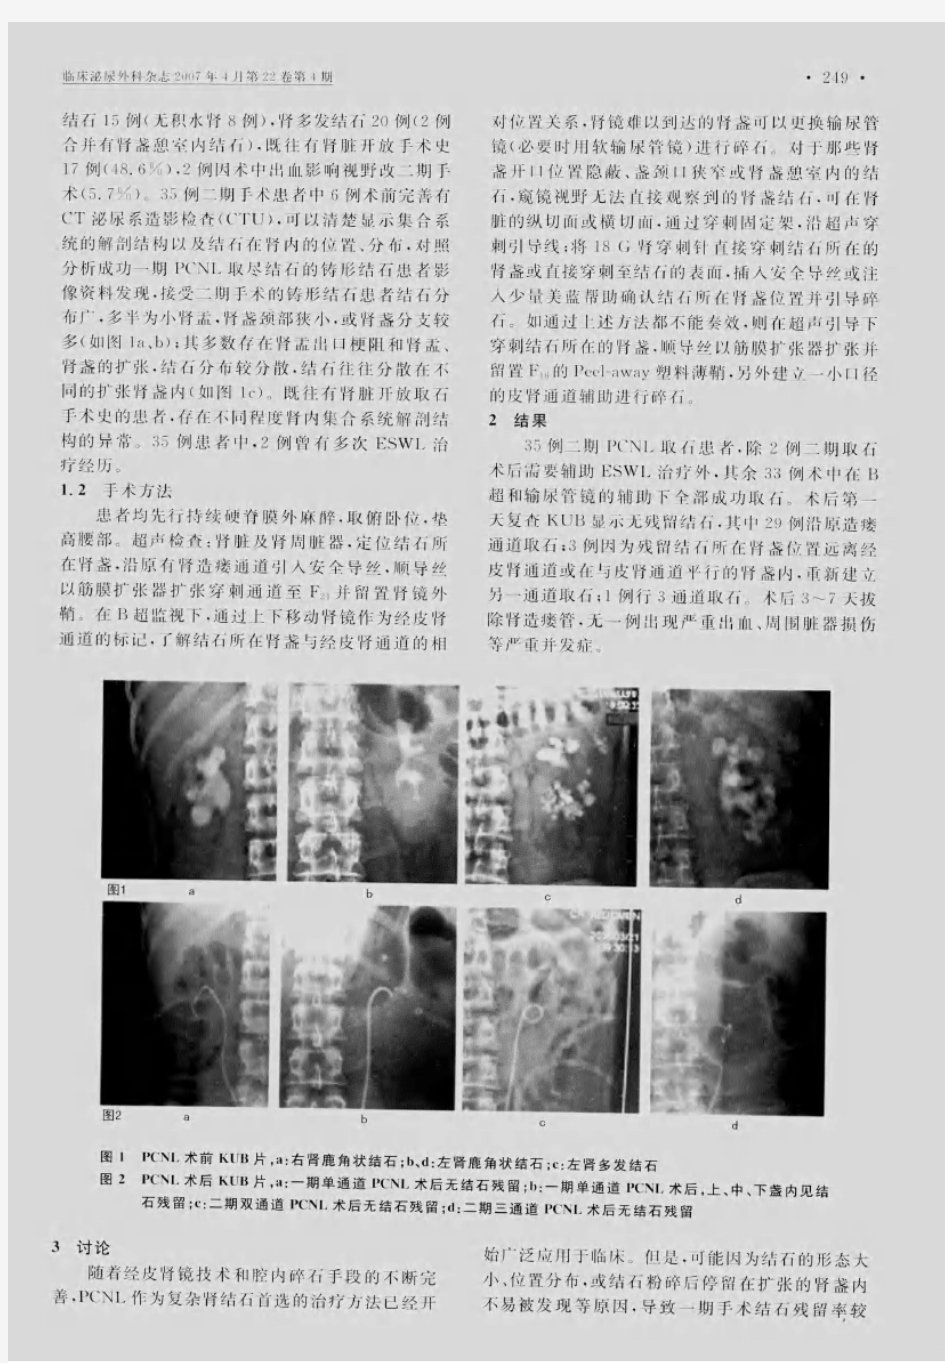 复杂肾结石经皮肾镜取石术后结石残留的原因与处理